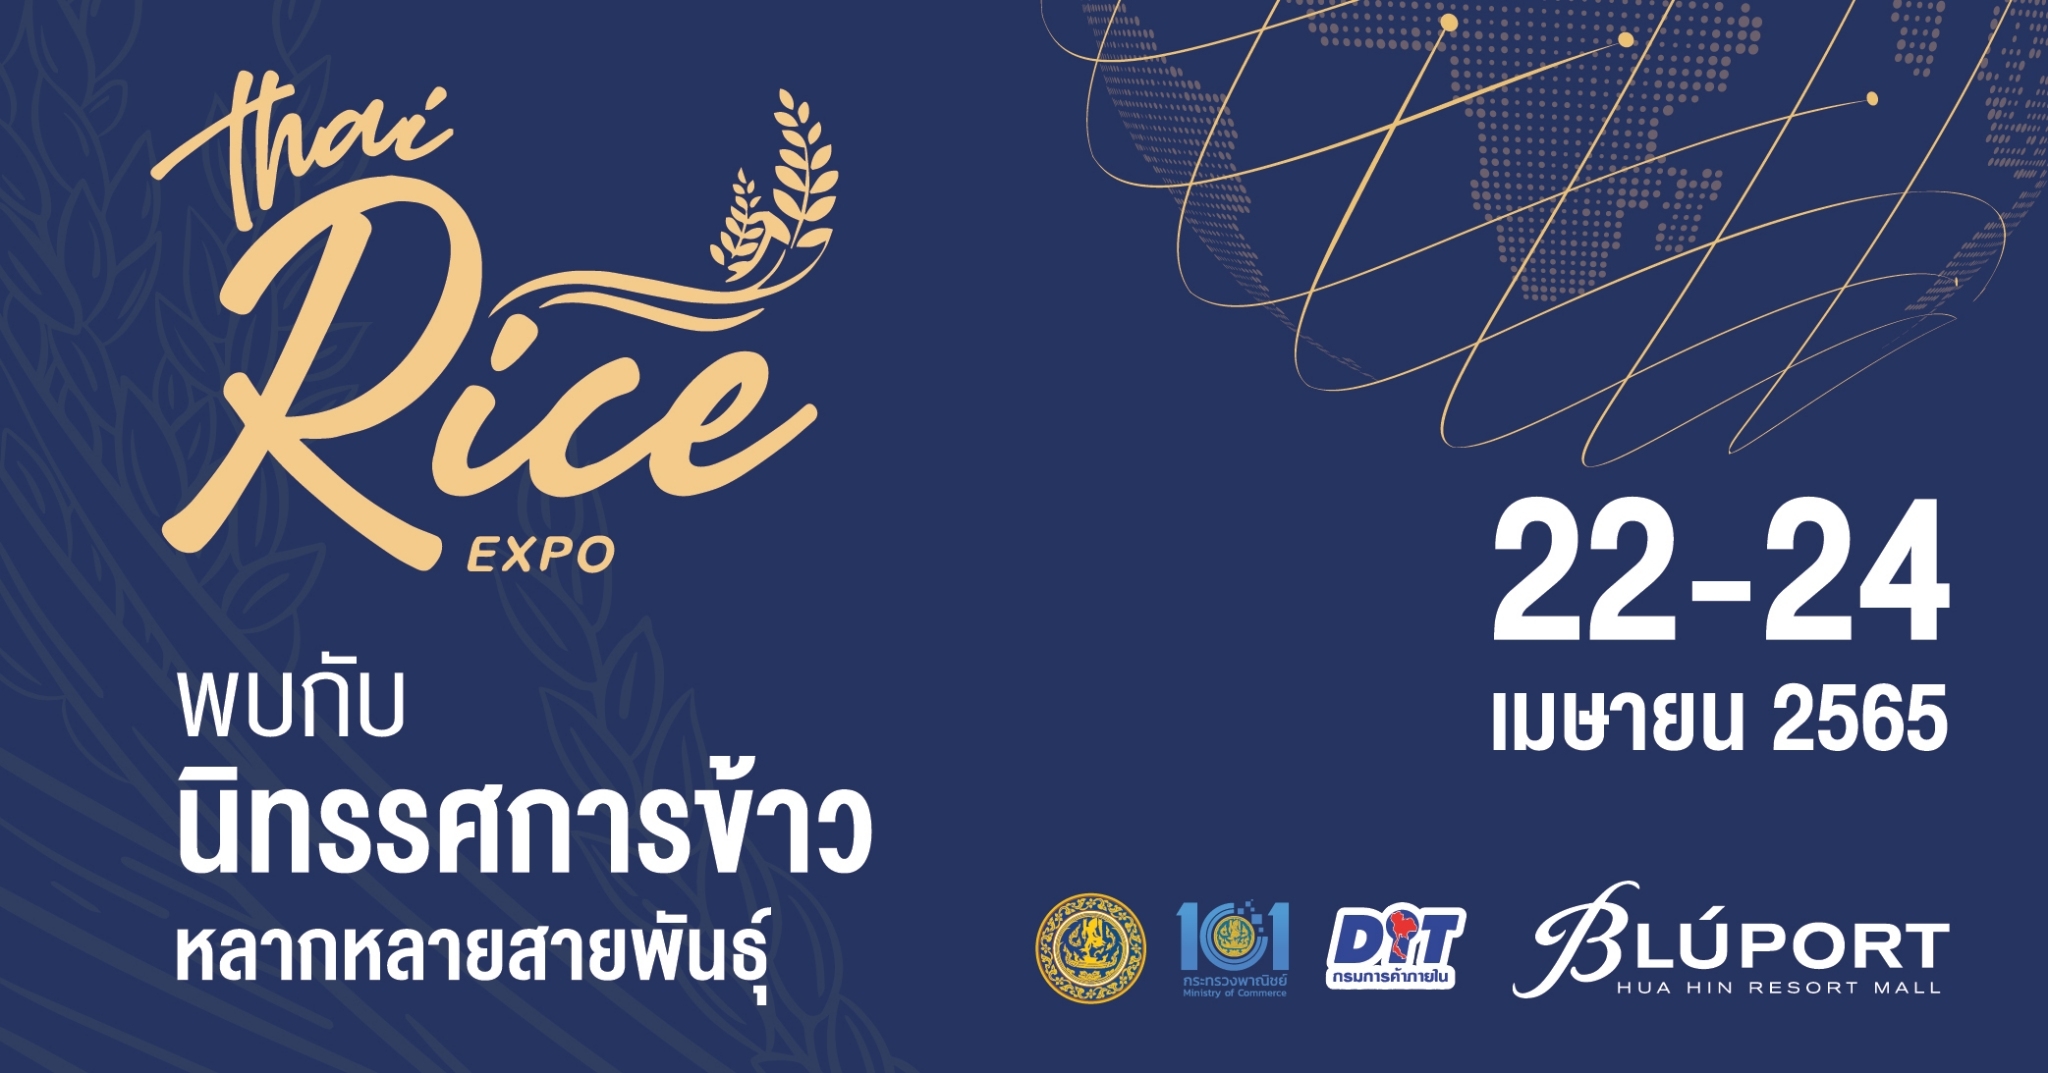 กรมการค้าภายใน กระทรวงพาณิชย์ และบลูพอร์ต หัวหิน จัดงาน Thai Rice Expo